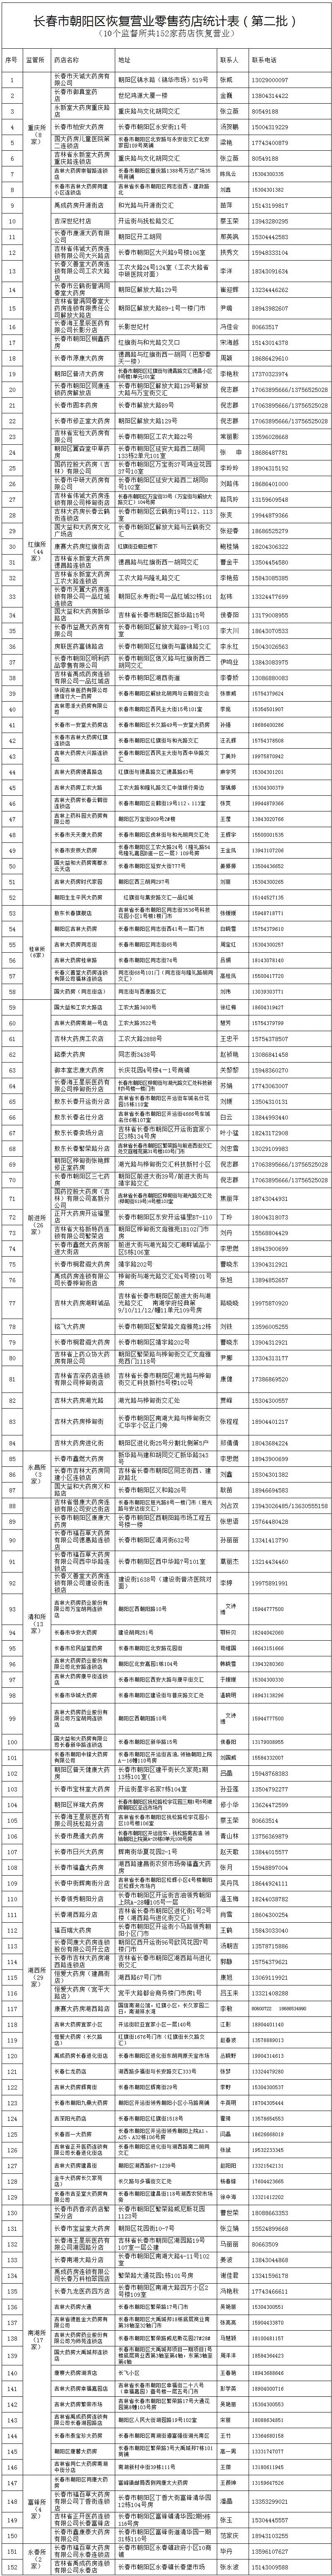 长春市朝阳区第三批保供企业名单